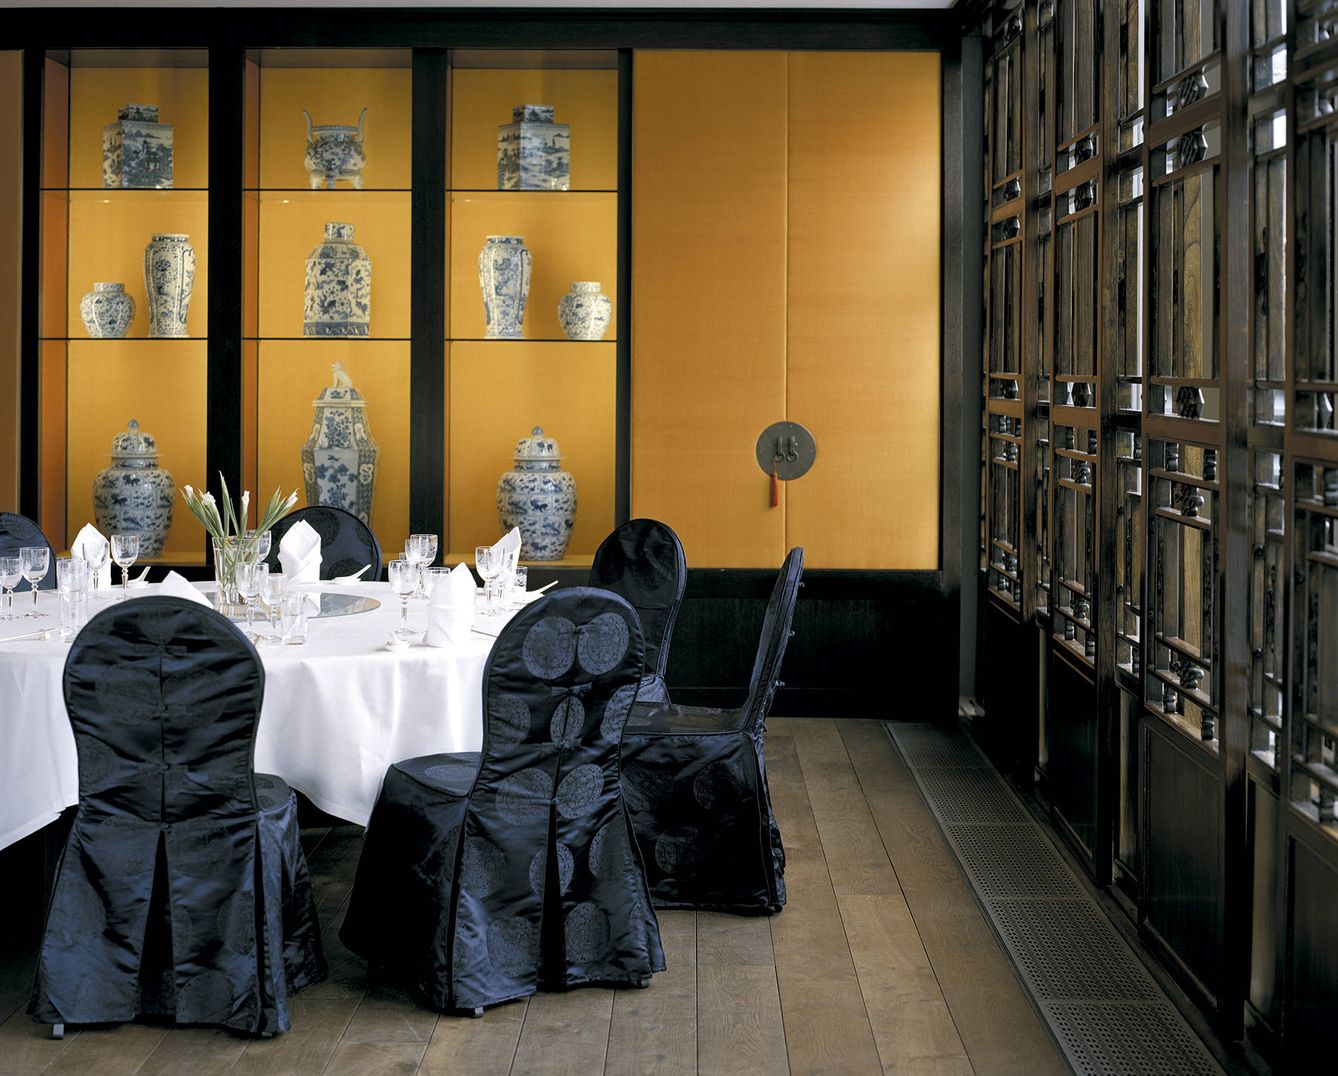 En la imagen, detalle del restaurante. Todo preparado para un banquete de lujo.